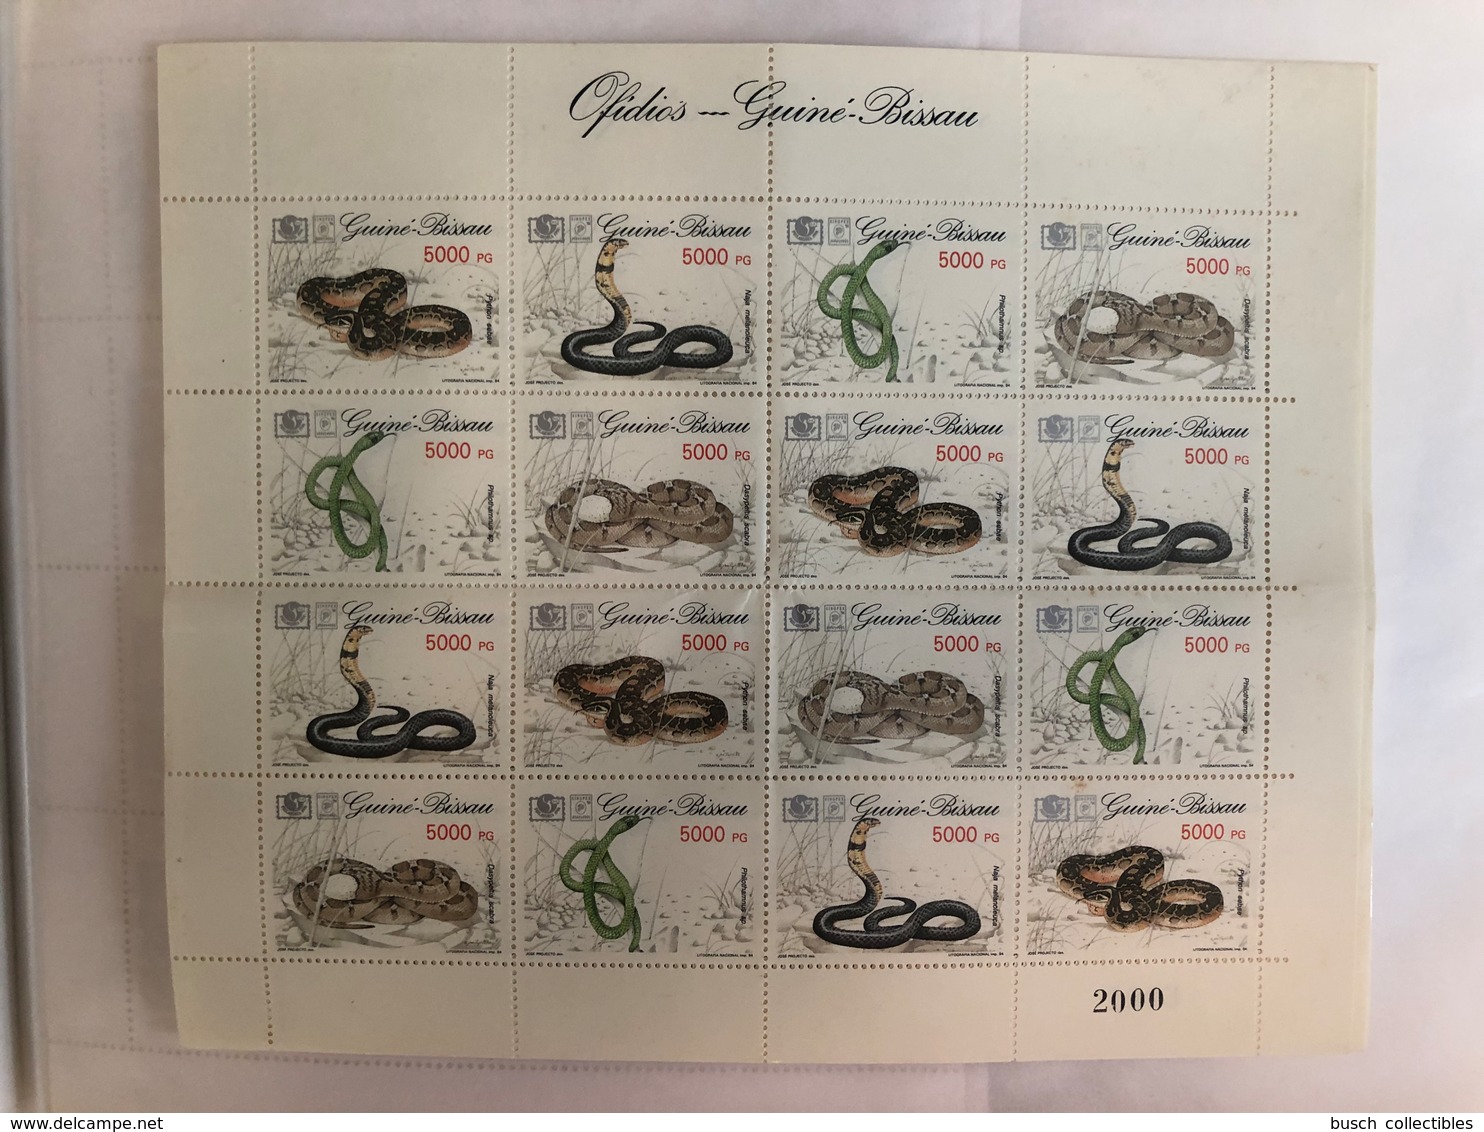 Guiné-Bissau Guinea Guinée 1994 Mi. 1211-1214 Serpents Snakes Schlangen Reptiles Reptilien MNH** - Slangen